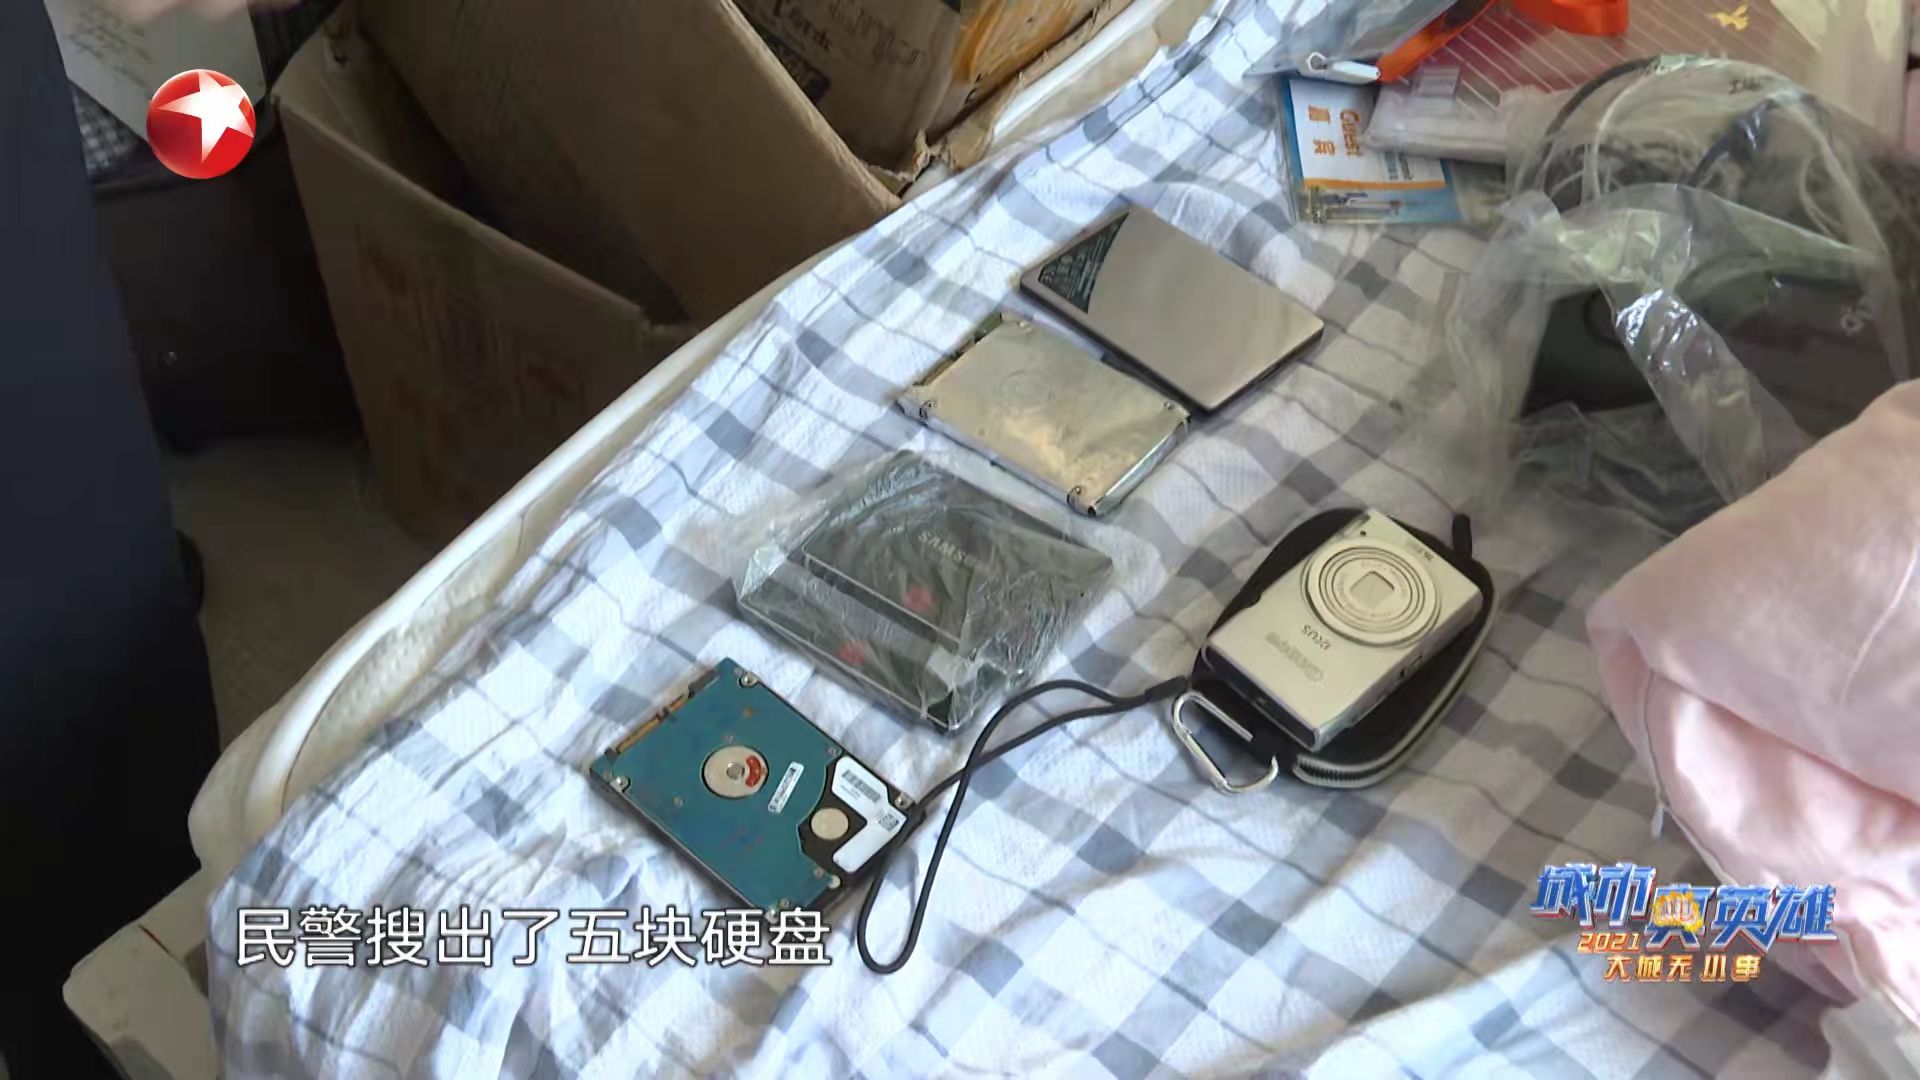 民警搜出了5块硬盘、一个照相机和大量的电话卡。本文图片均为上海市公安局供图